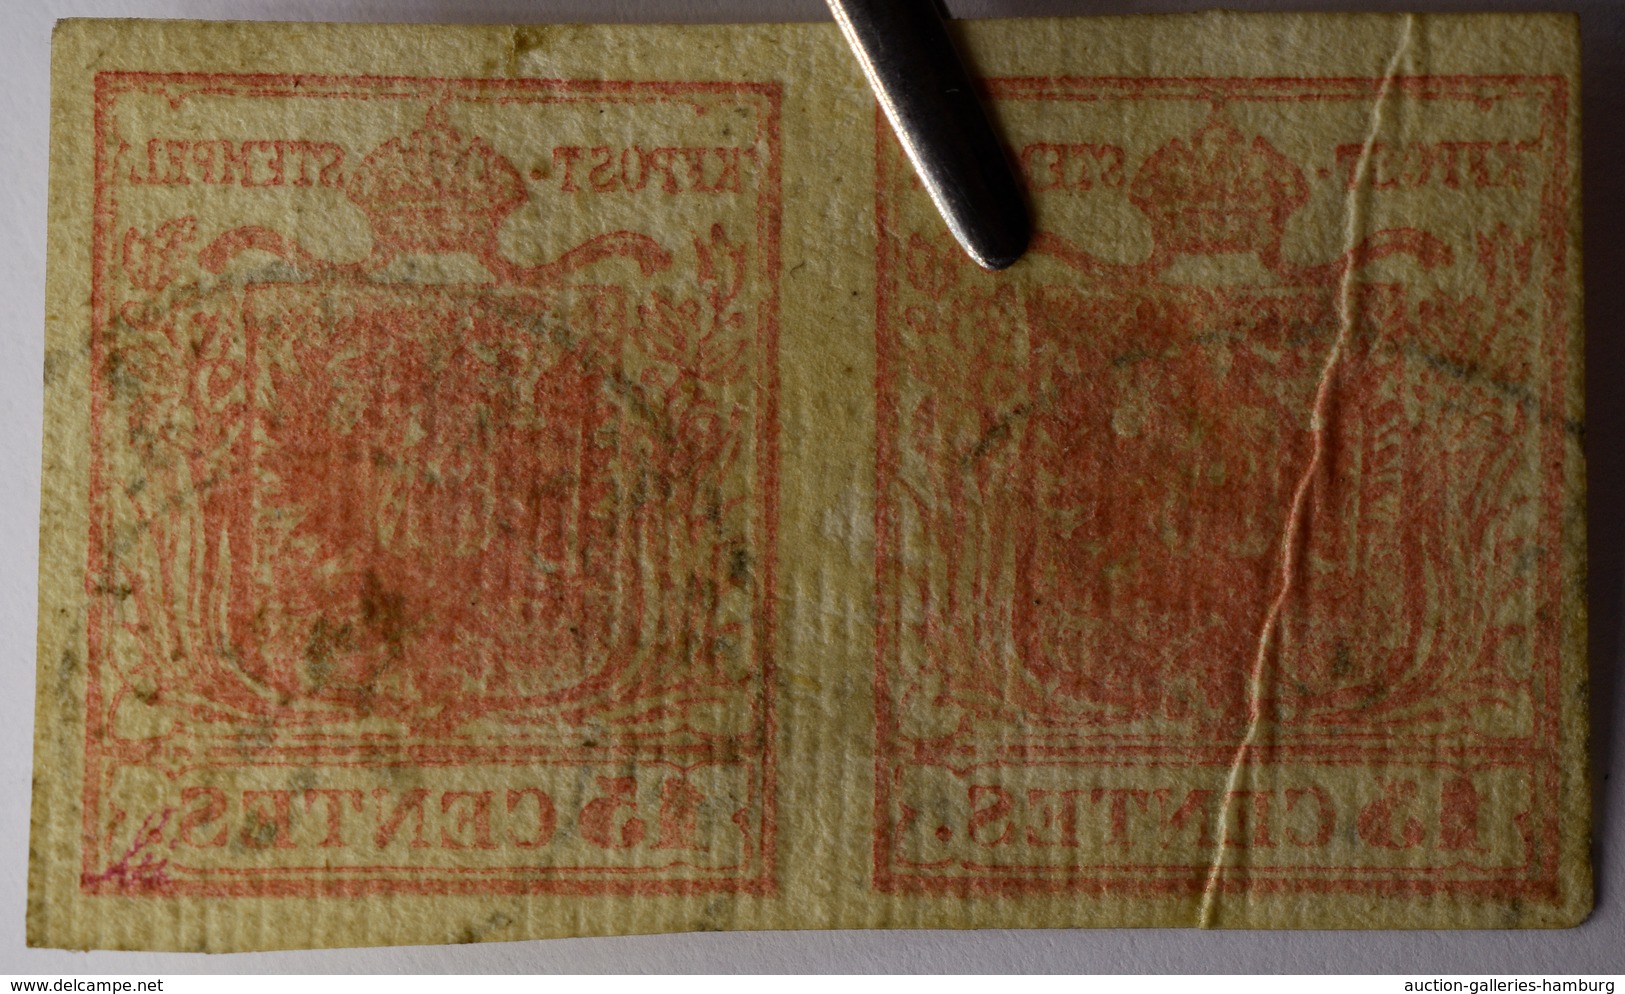 Österreich: 1850, 6 Kreuzer rötlichbraun auf Handpapier, Type Ib, auf kompletter Retour-Recepisse vo